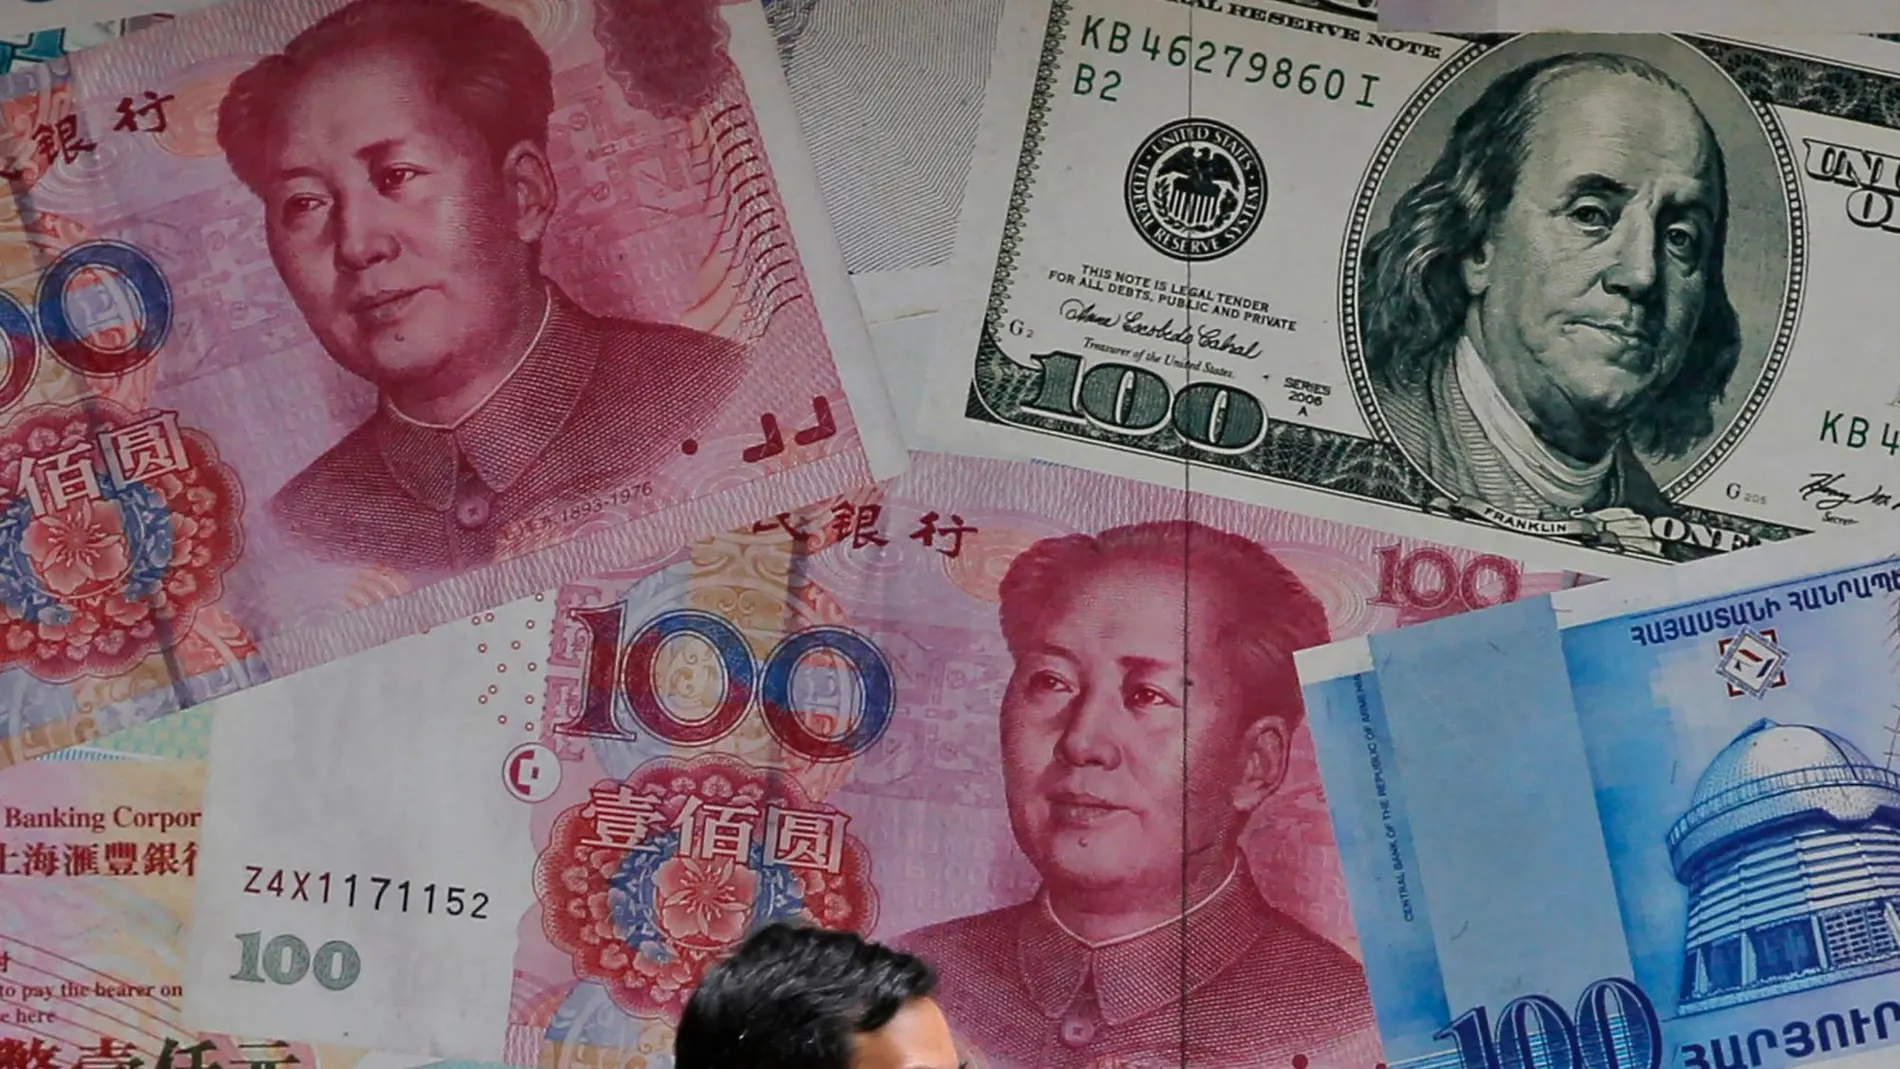 EEUU acusa a China de "manipular divisas"y amenaza con represalias